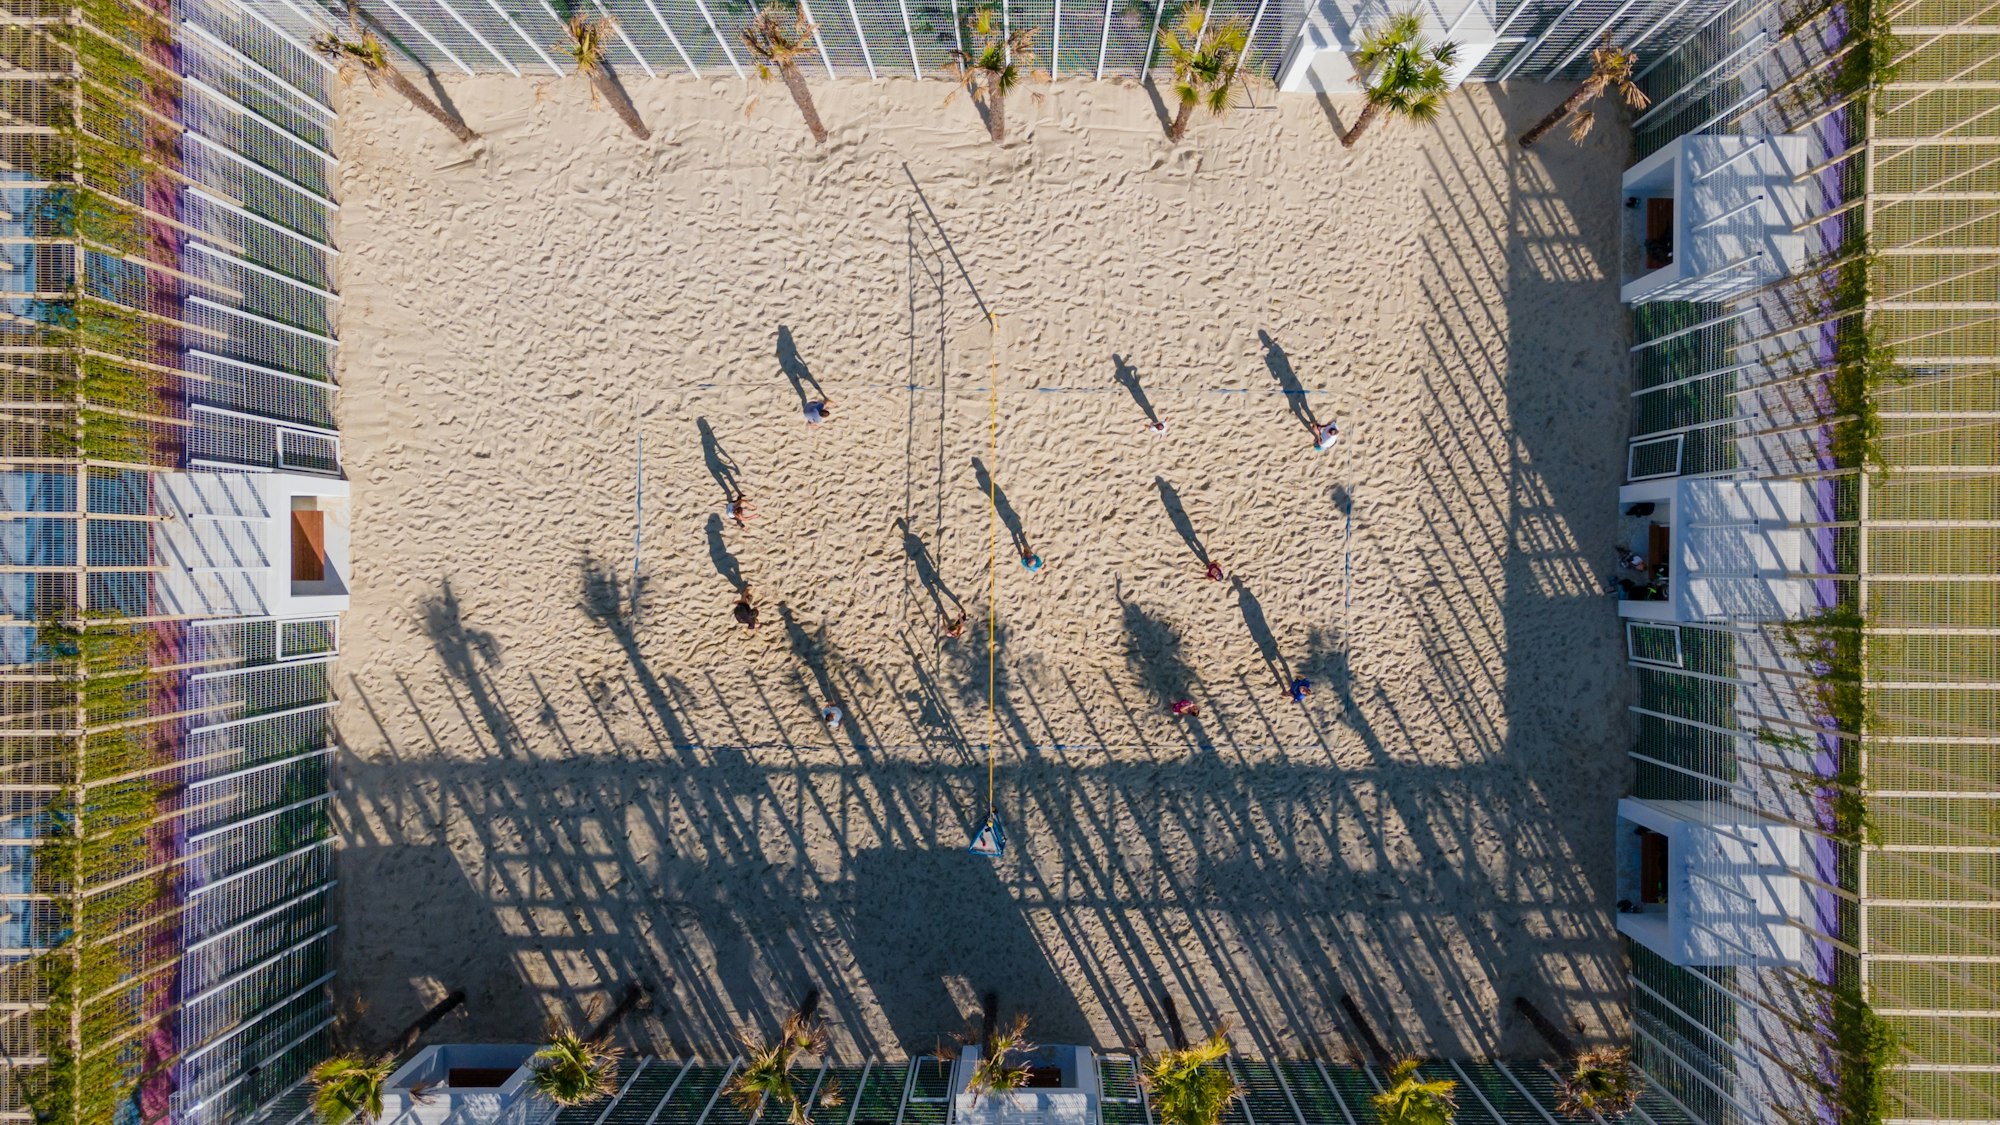 Vista superior da quadra de vôlei de praia no parque público. Competição de esportes de praia